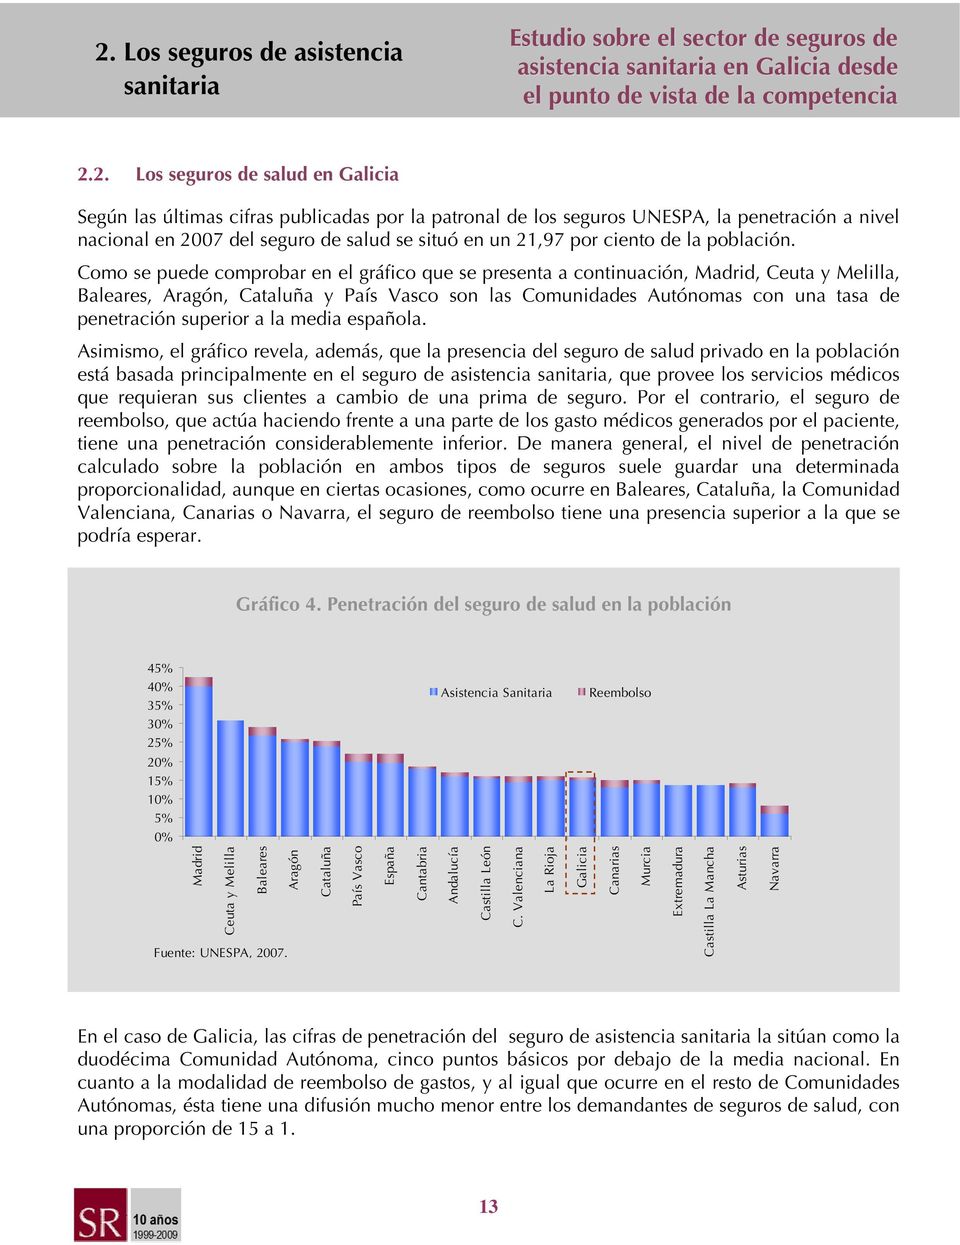 Como se puede comprobar en el gráfico que se presenta a continuación, Madrid, Ceuta y Melilla, Baleares, Aragón, Cataluña y País Vasco son las Comunidades Autónomas con una tasa de penetración